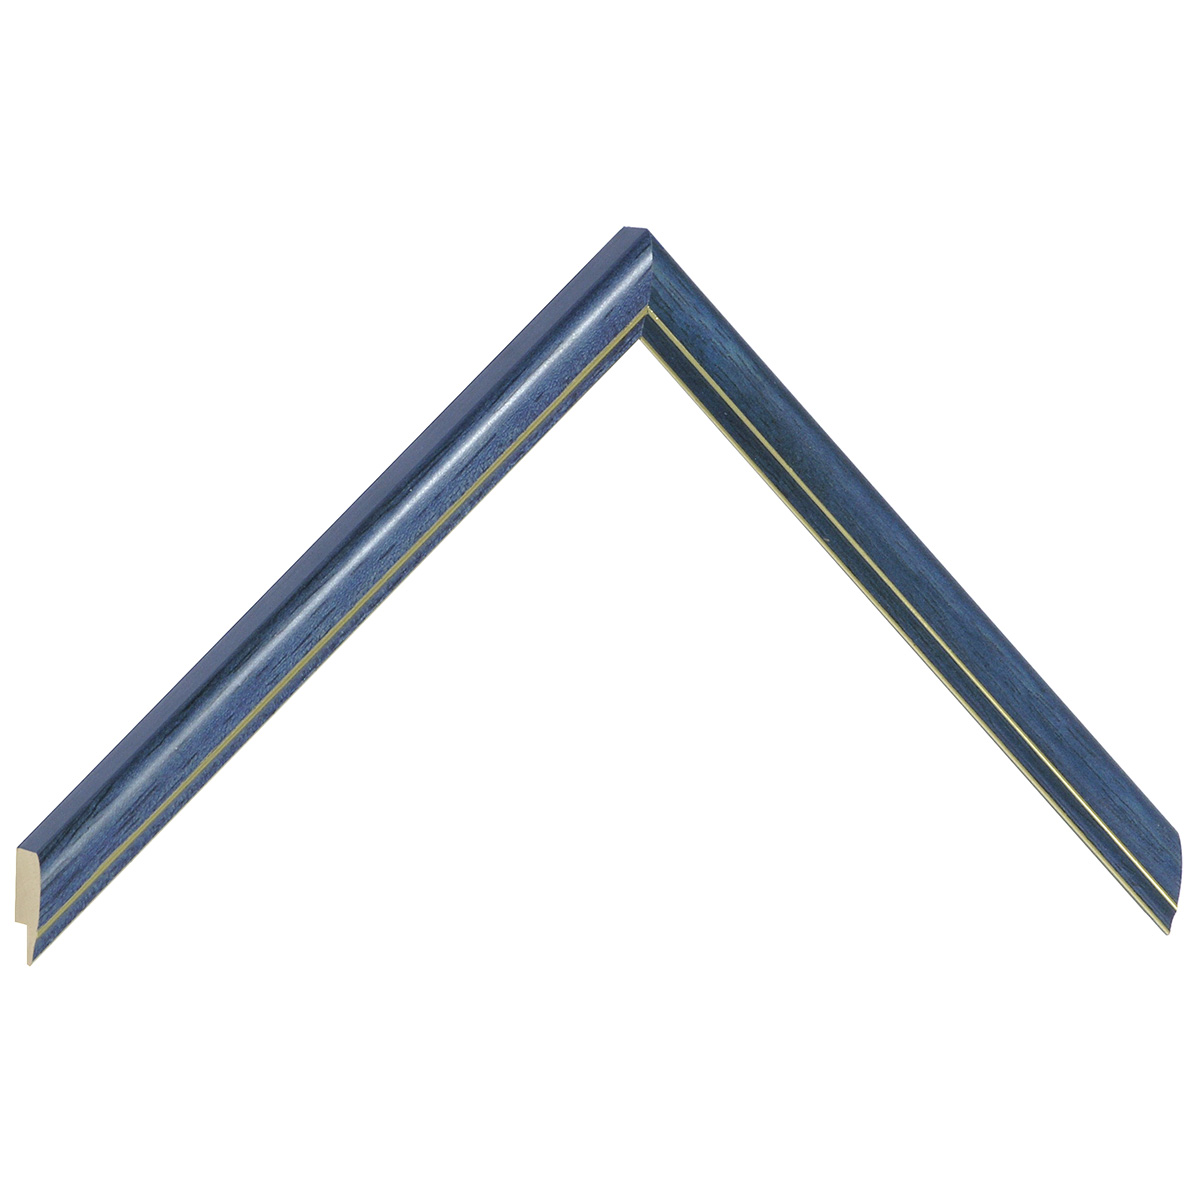 Asta in ayous giuntato larg. mm 13 - colore blu con filo argento - Campione